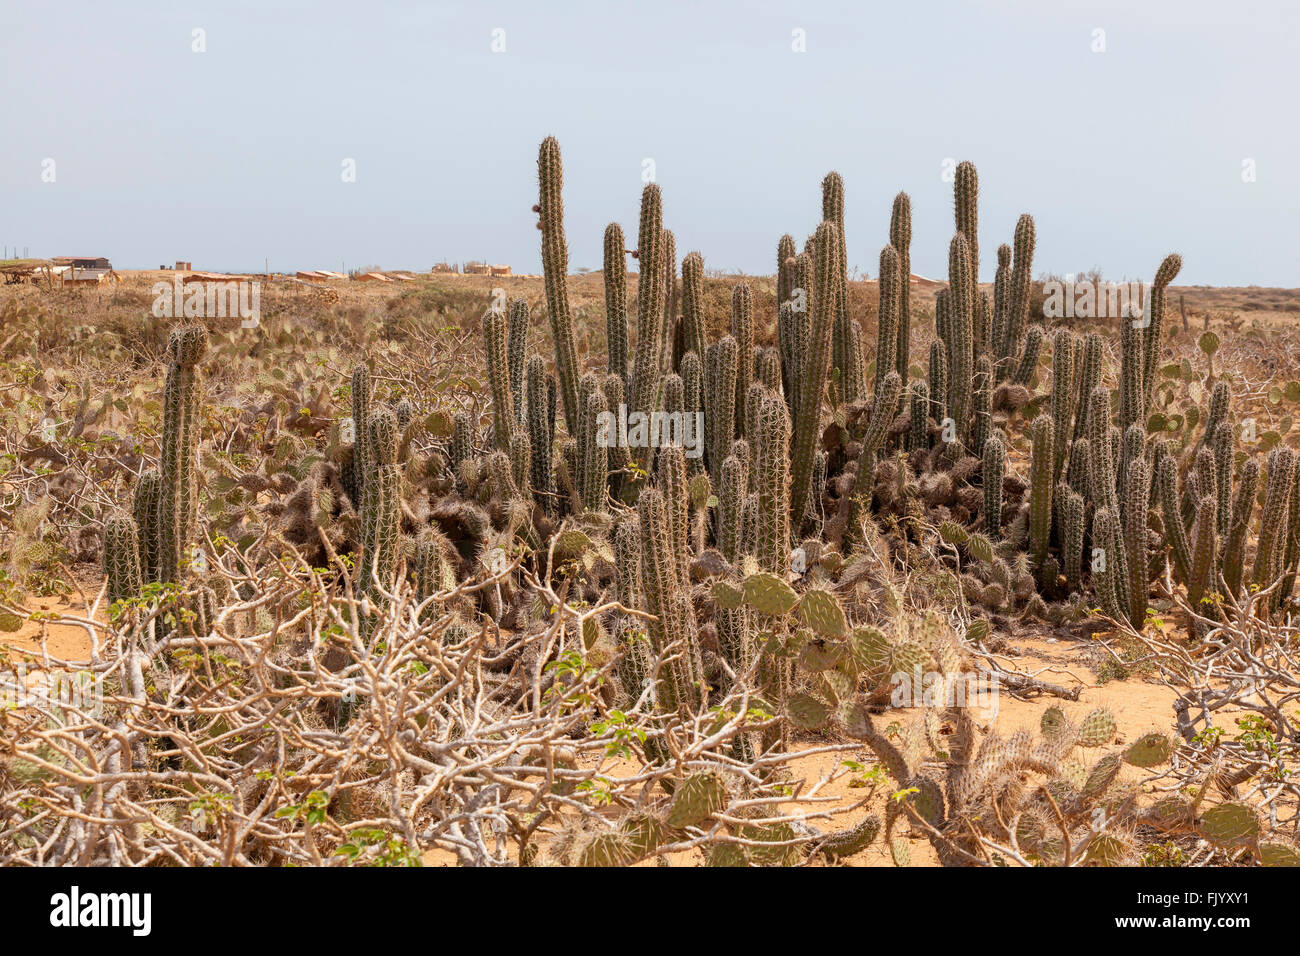 Cactus wilderness, La Guajira Colombia Stock Photo